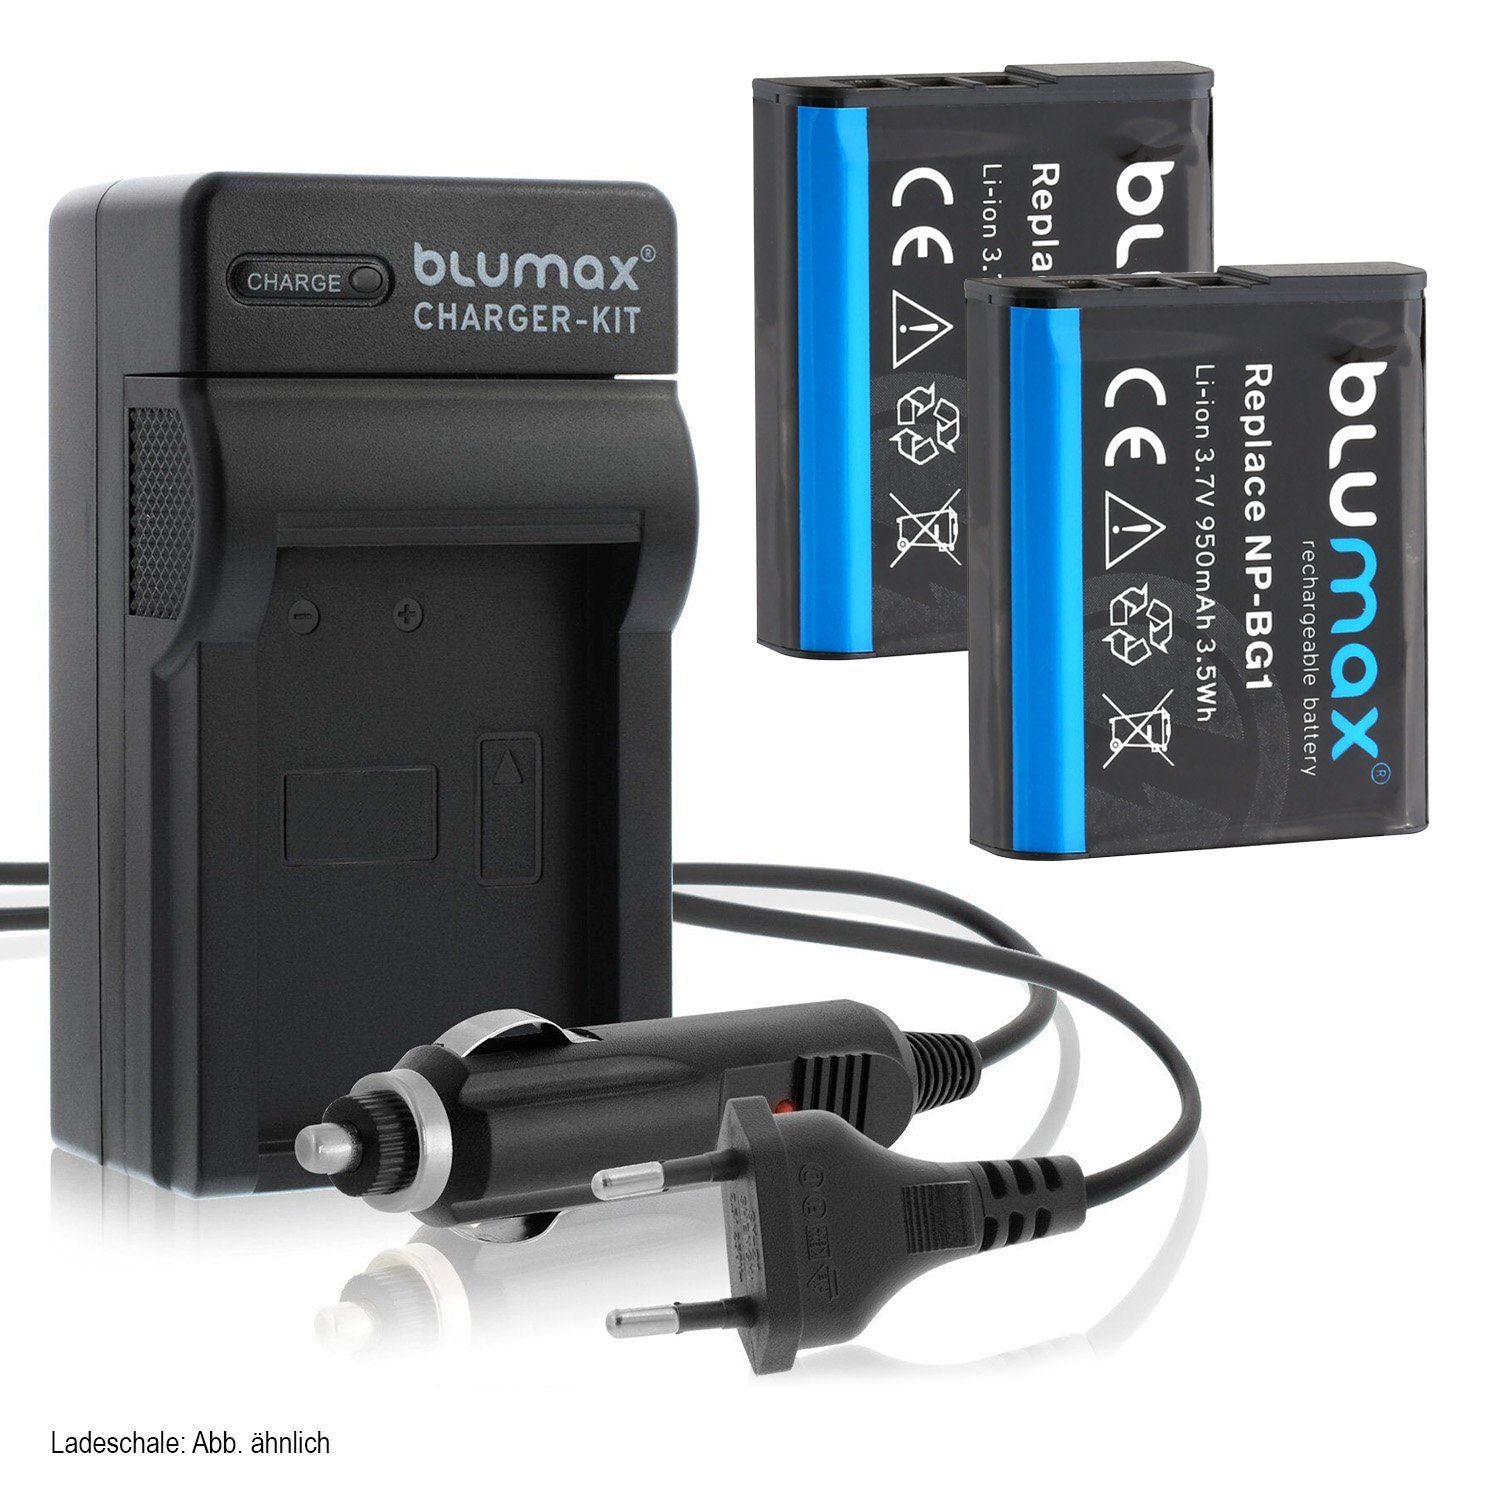 Blumax Set mit Lader für Sony NP-BG1 Cyber-shot 950 mAh Kamera-Akku